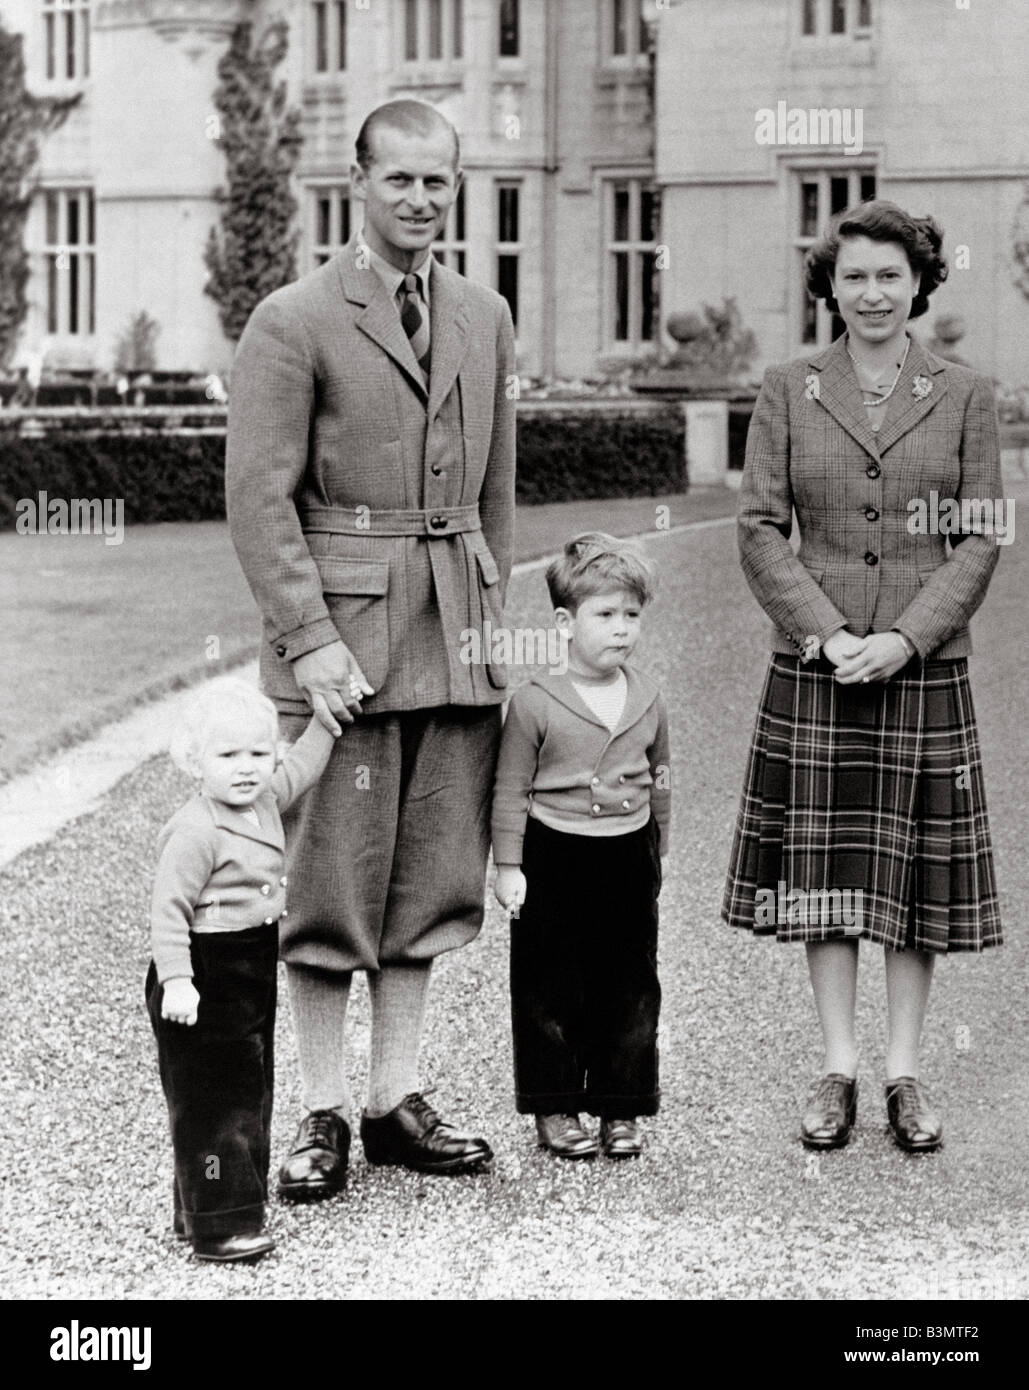 La reine Elizabeth II avec le duc d'Édimbourg, la princesse Anne et le Prince Charles en 1953 - voir description ci-dessous pour plus de détails Banque D'Images